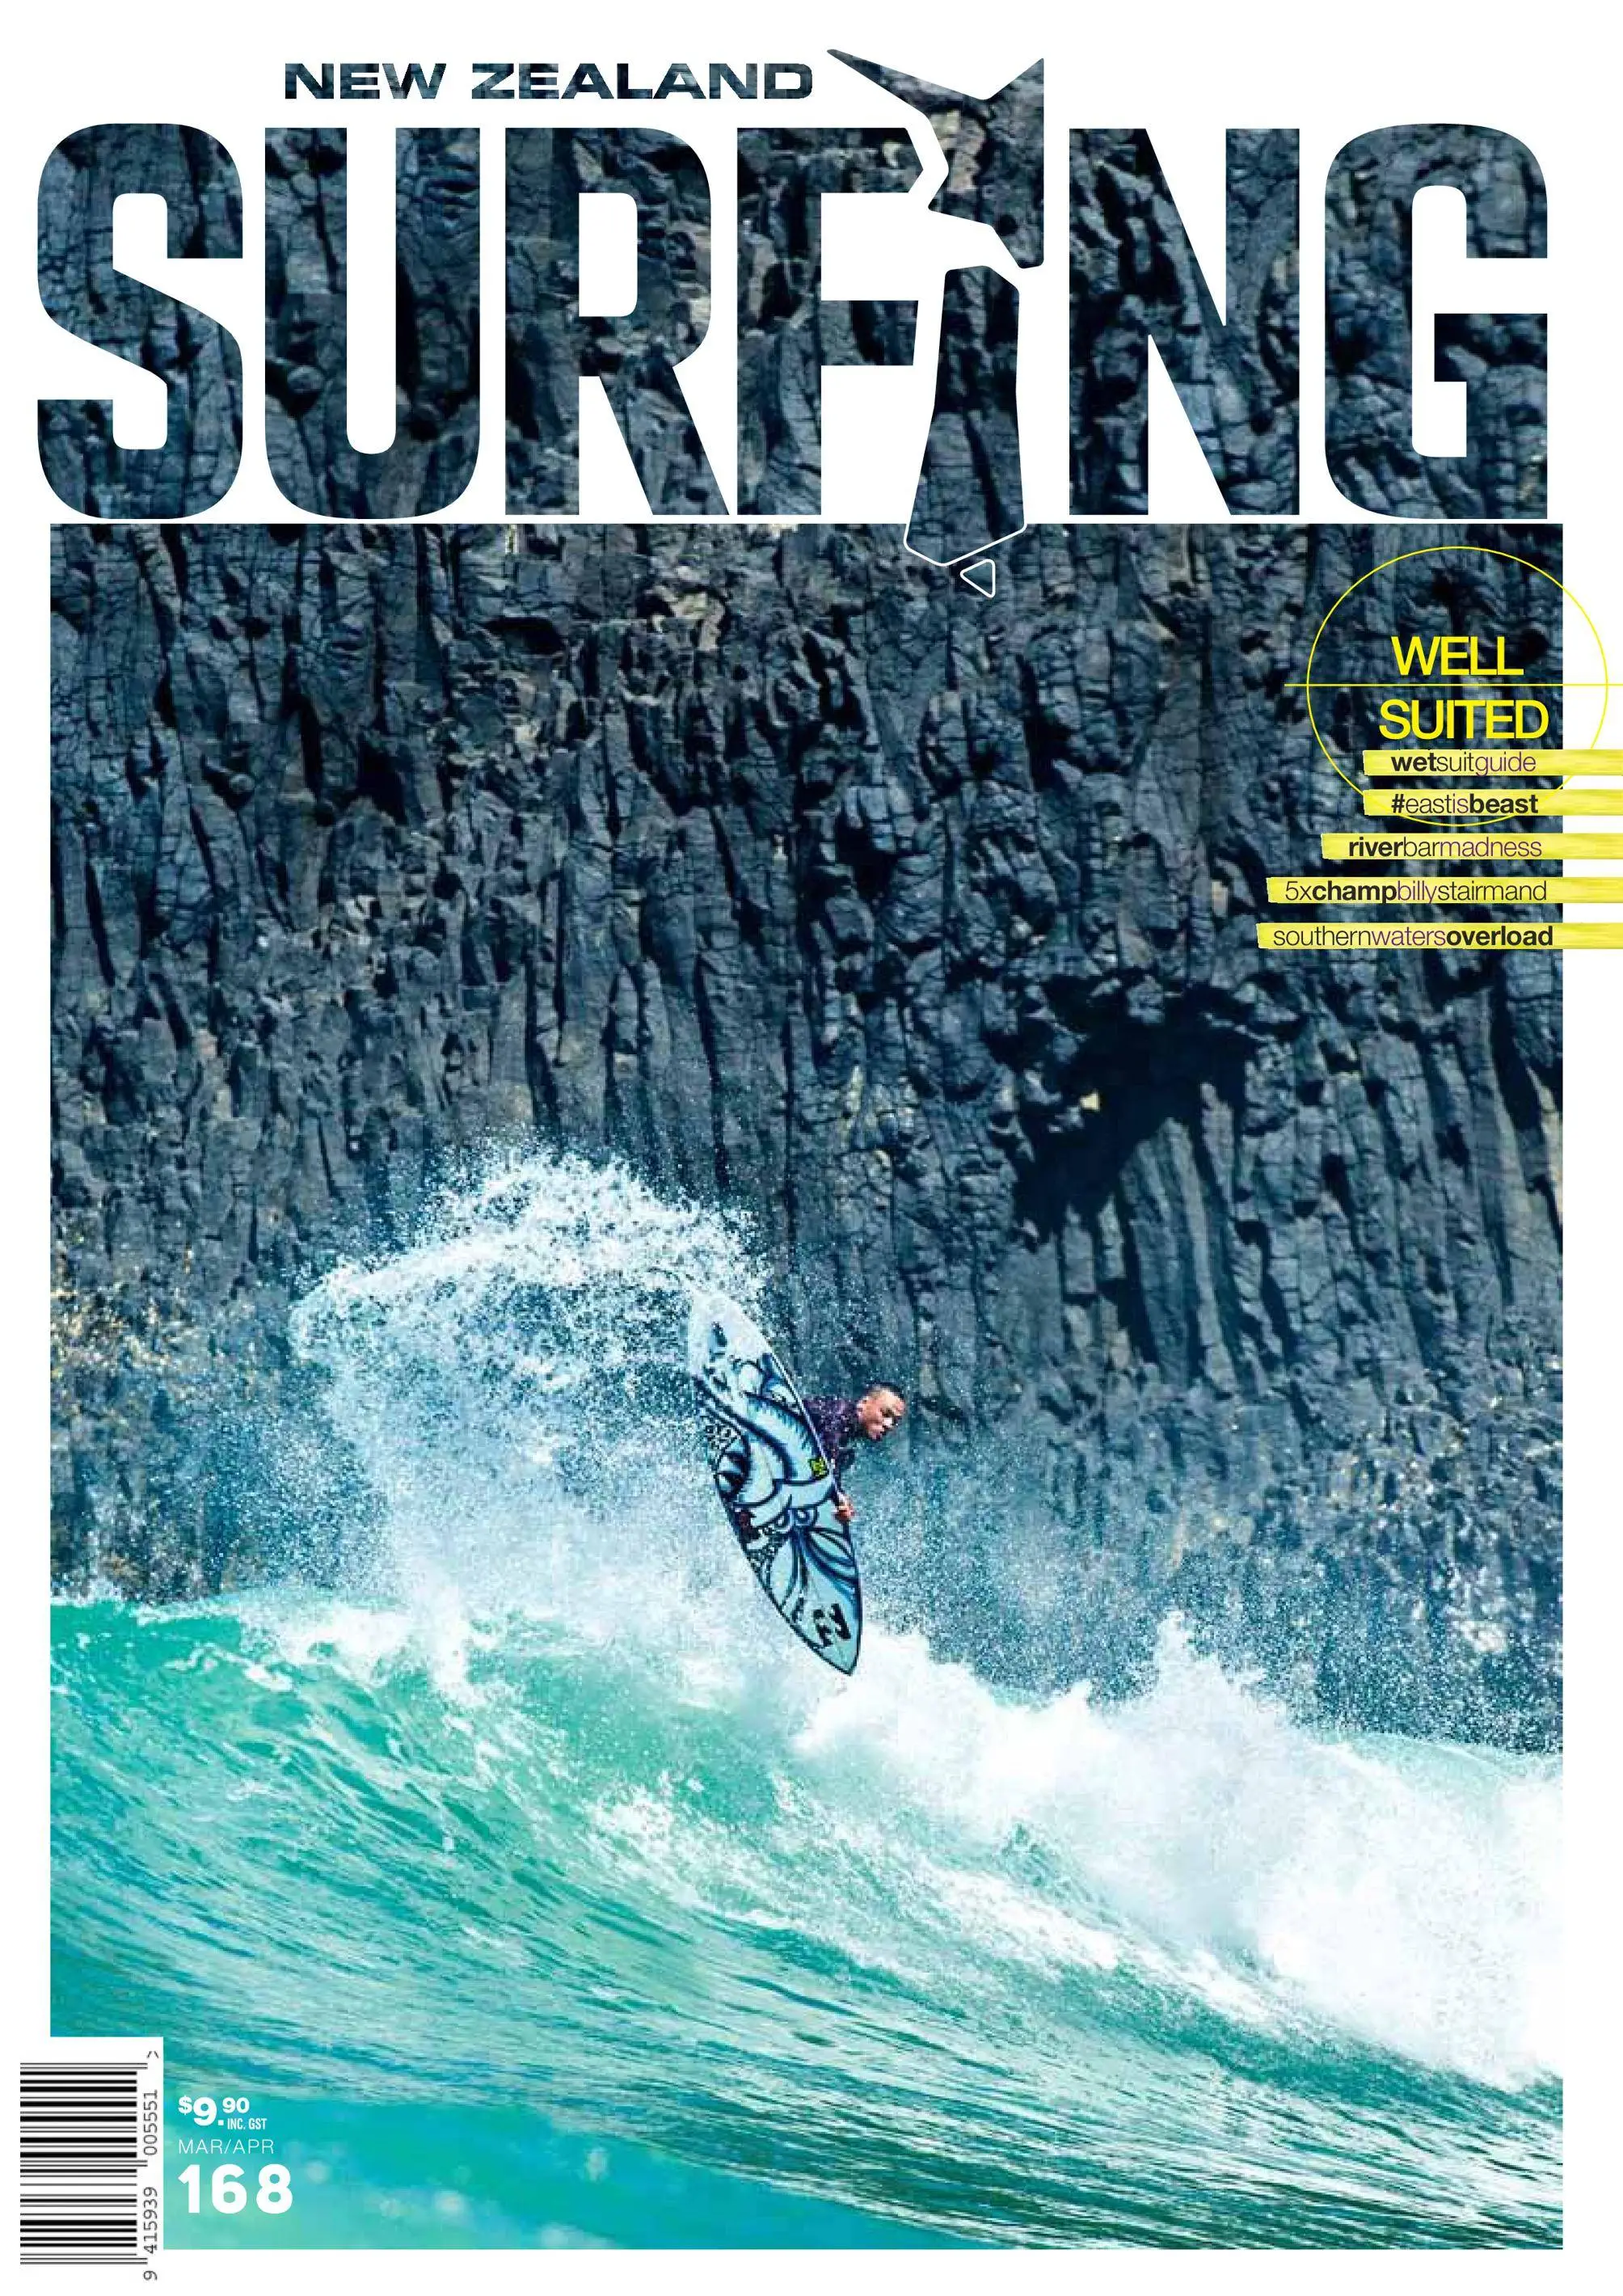 Better magazine. Серфинг в новой Зеландии.